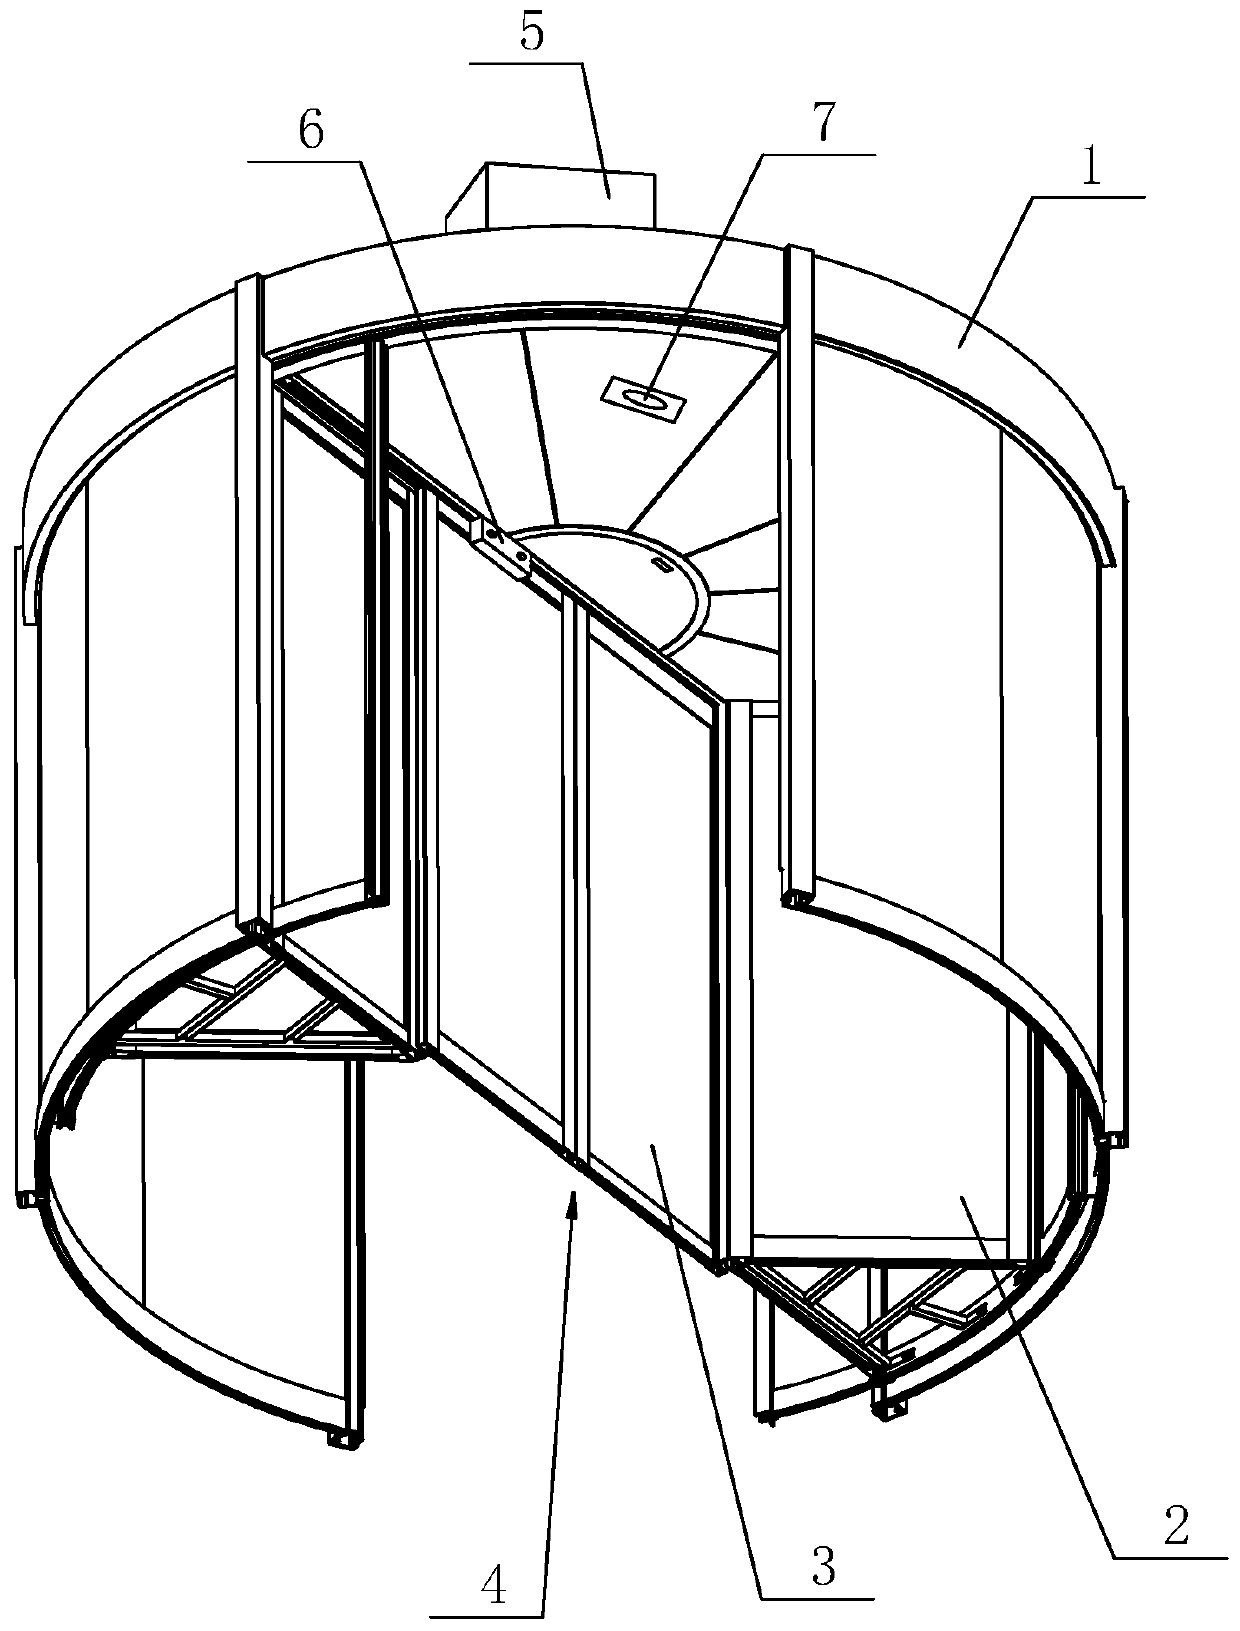 Control method of two-wing revolving door